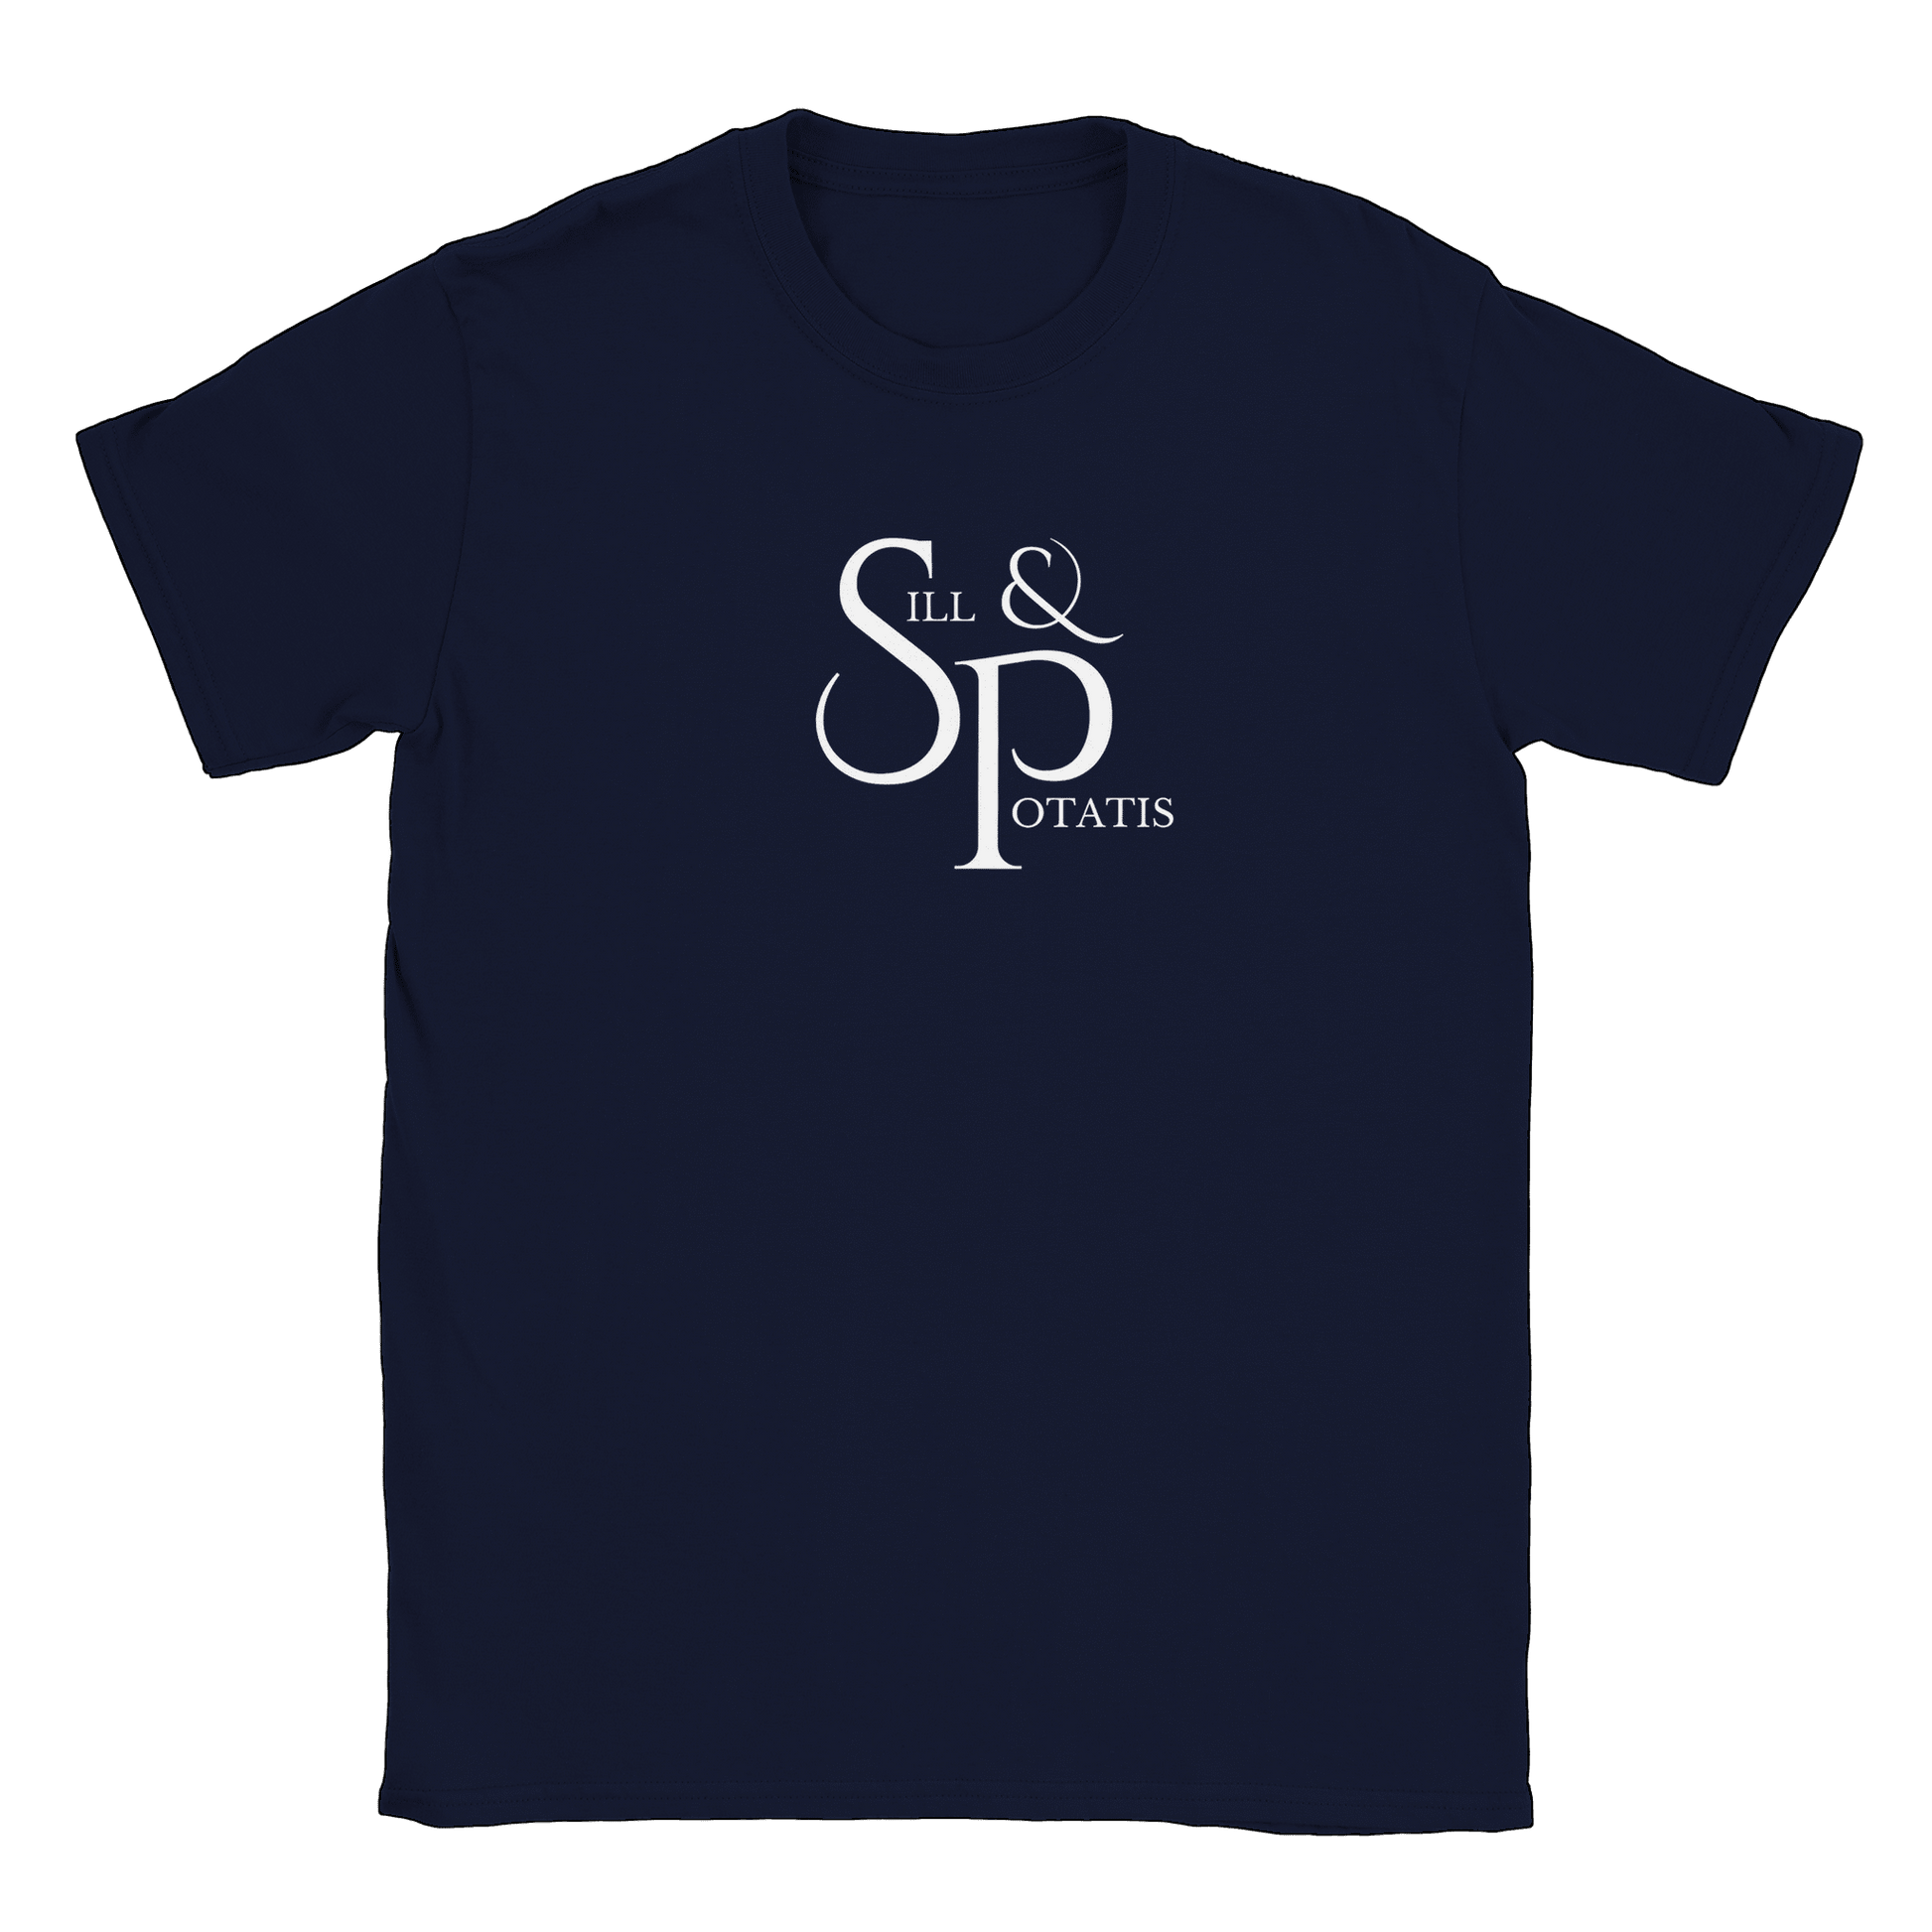 Sill och Potatis - T-shirt Navy